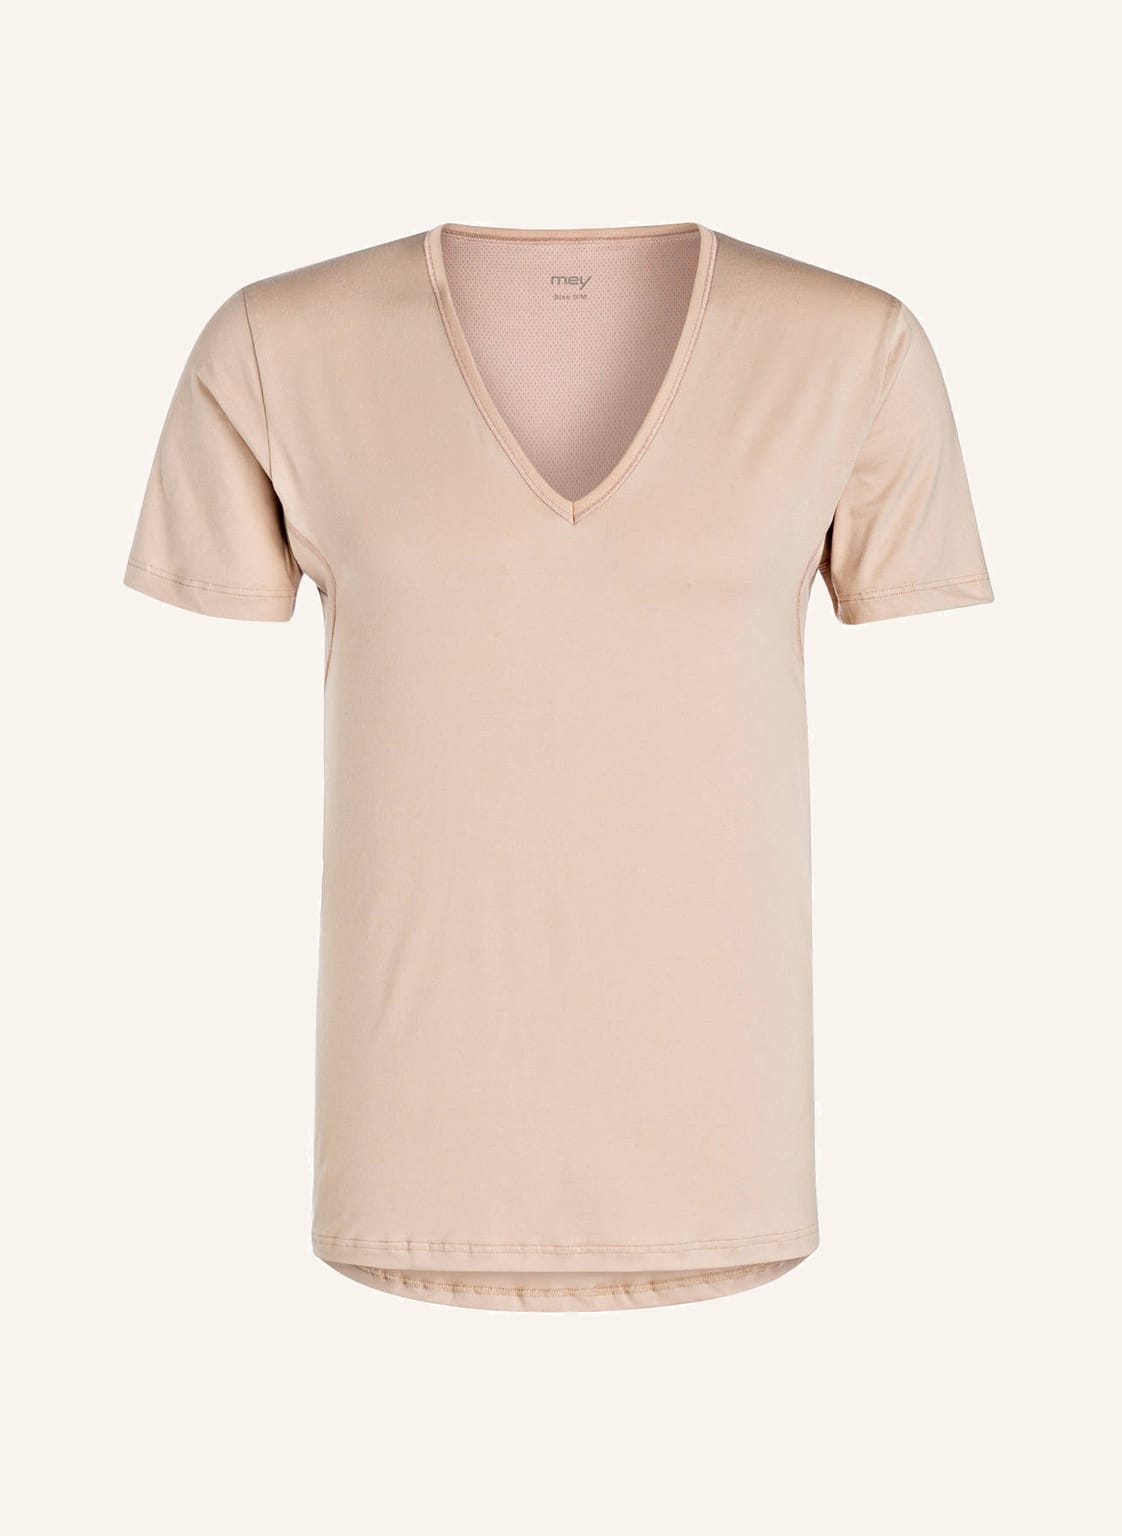 Mey V-Shirt Serie Dry Cotton beige von mey